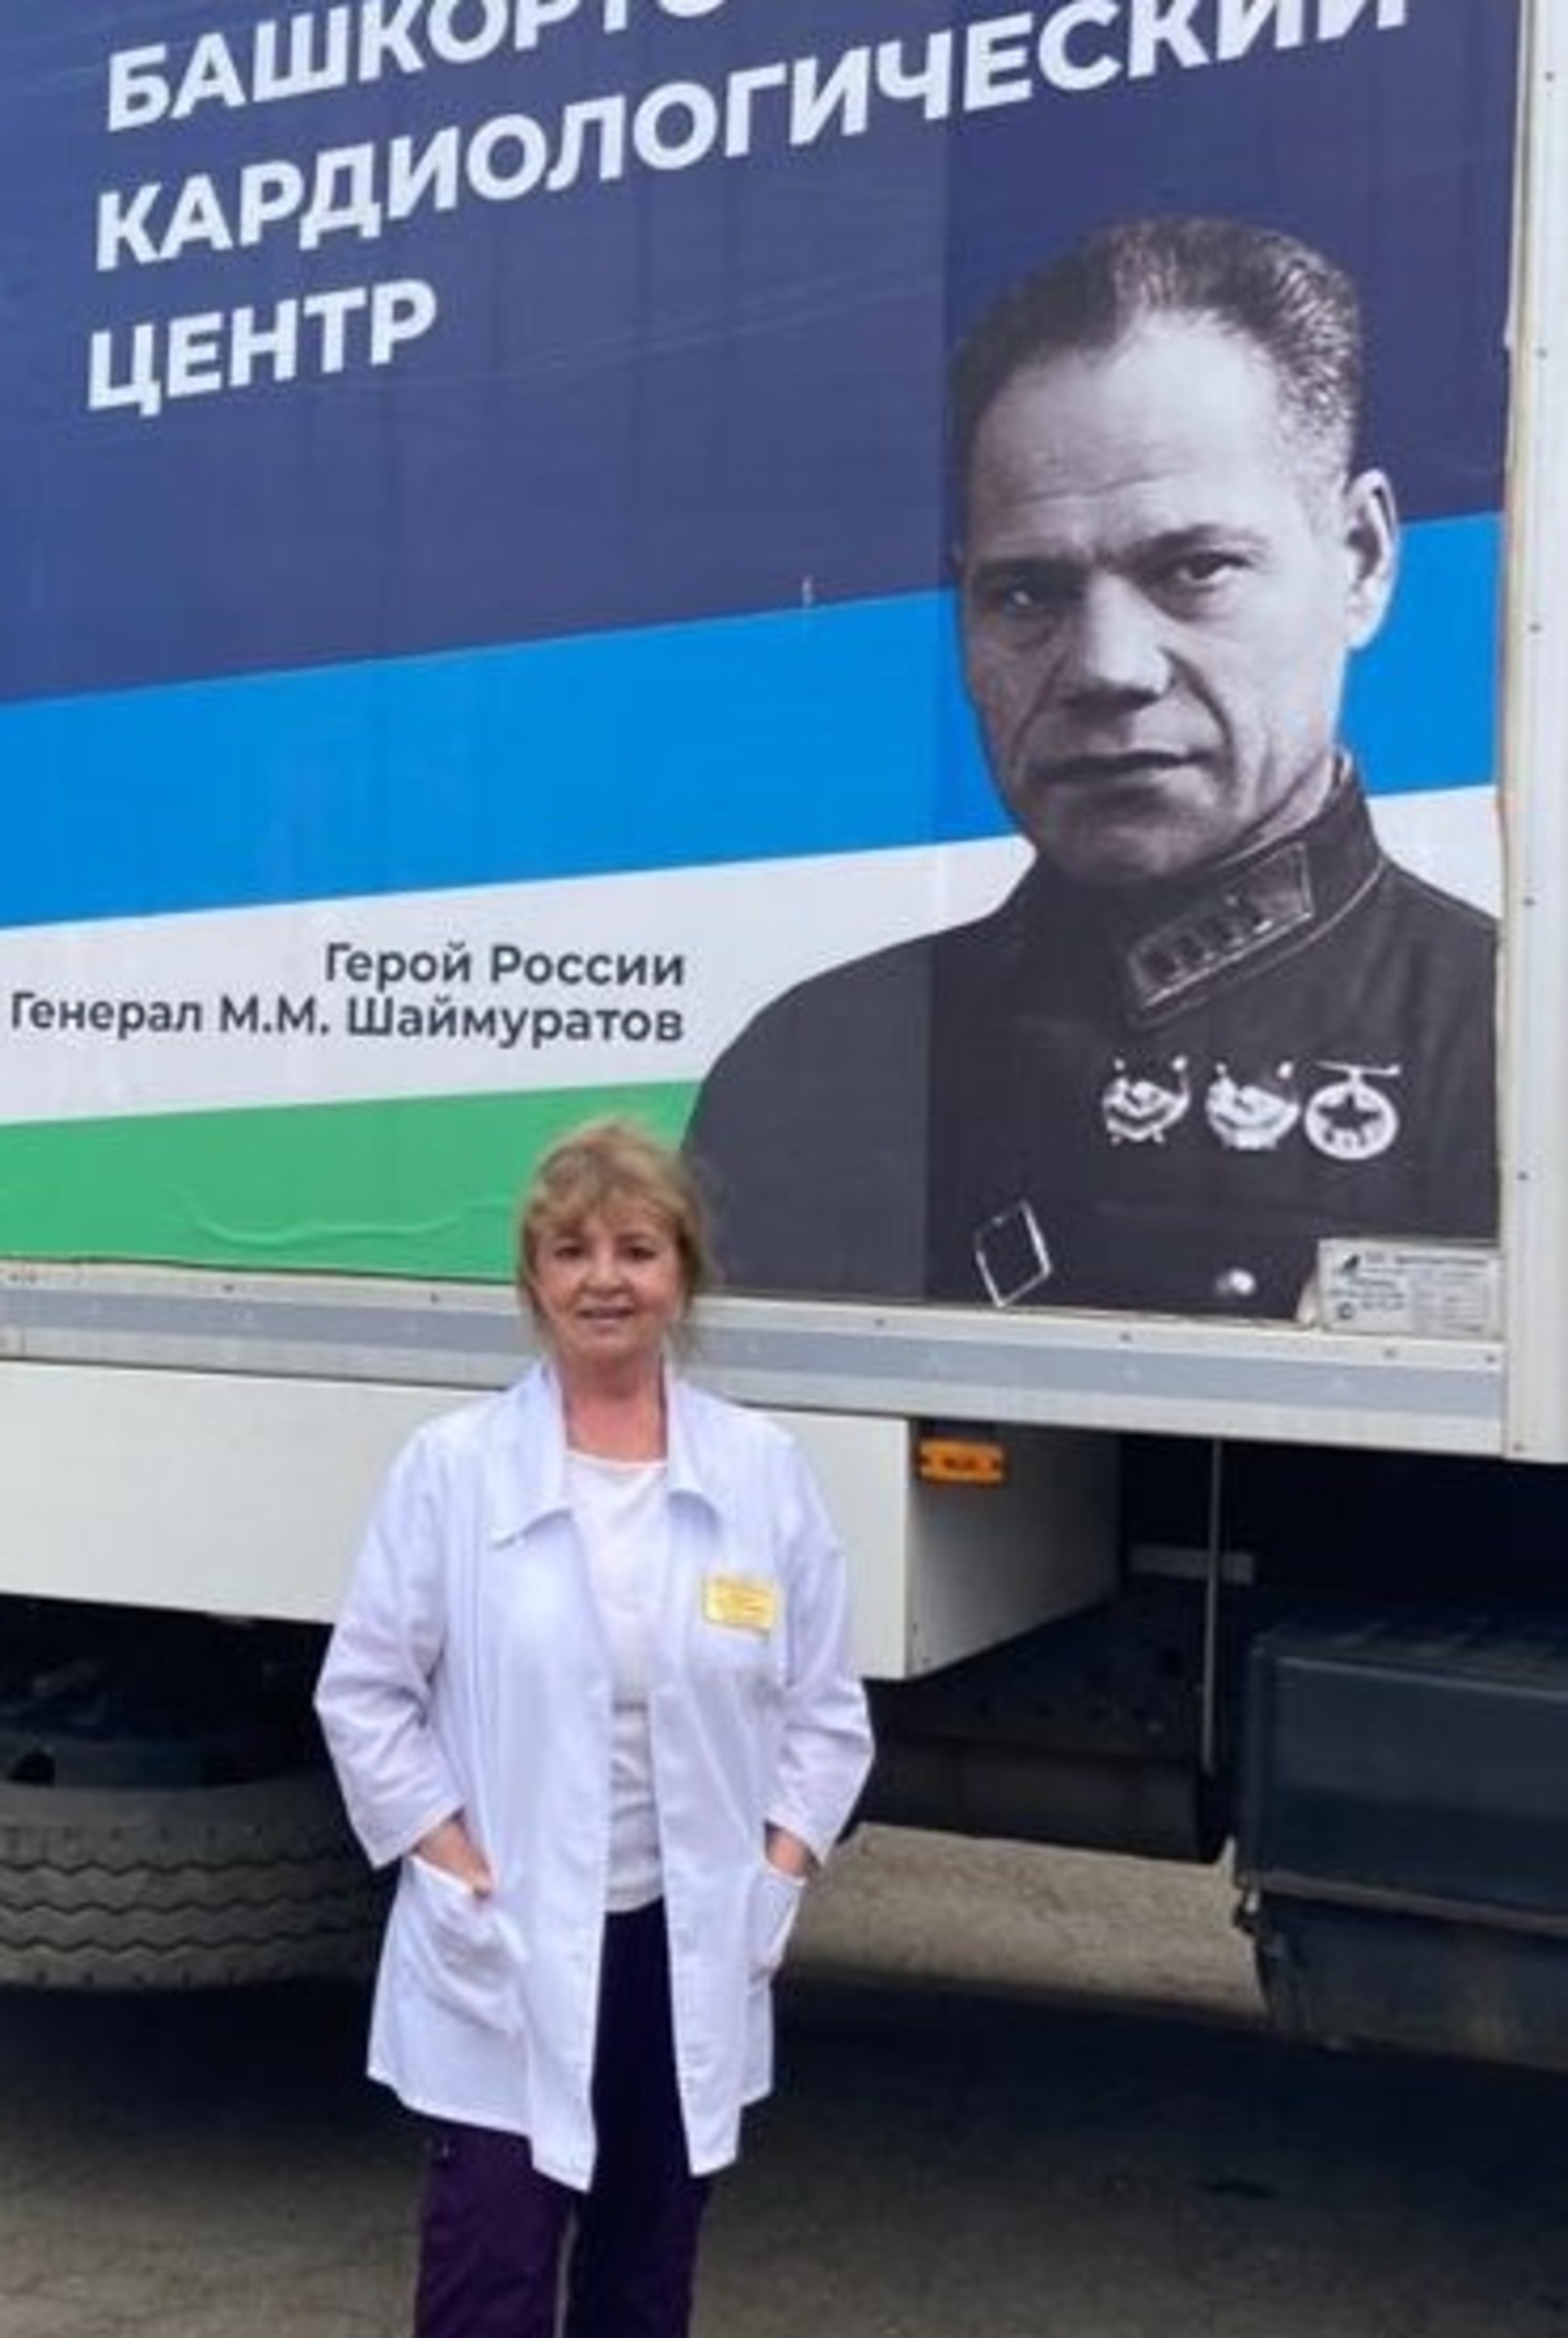 Врач-доброволец из Башкирии  побывала на Донбассе: «У меня там произошла переоценка ценностей»